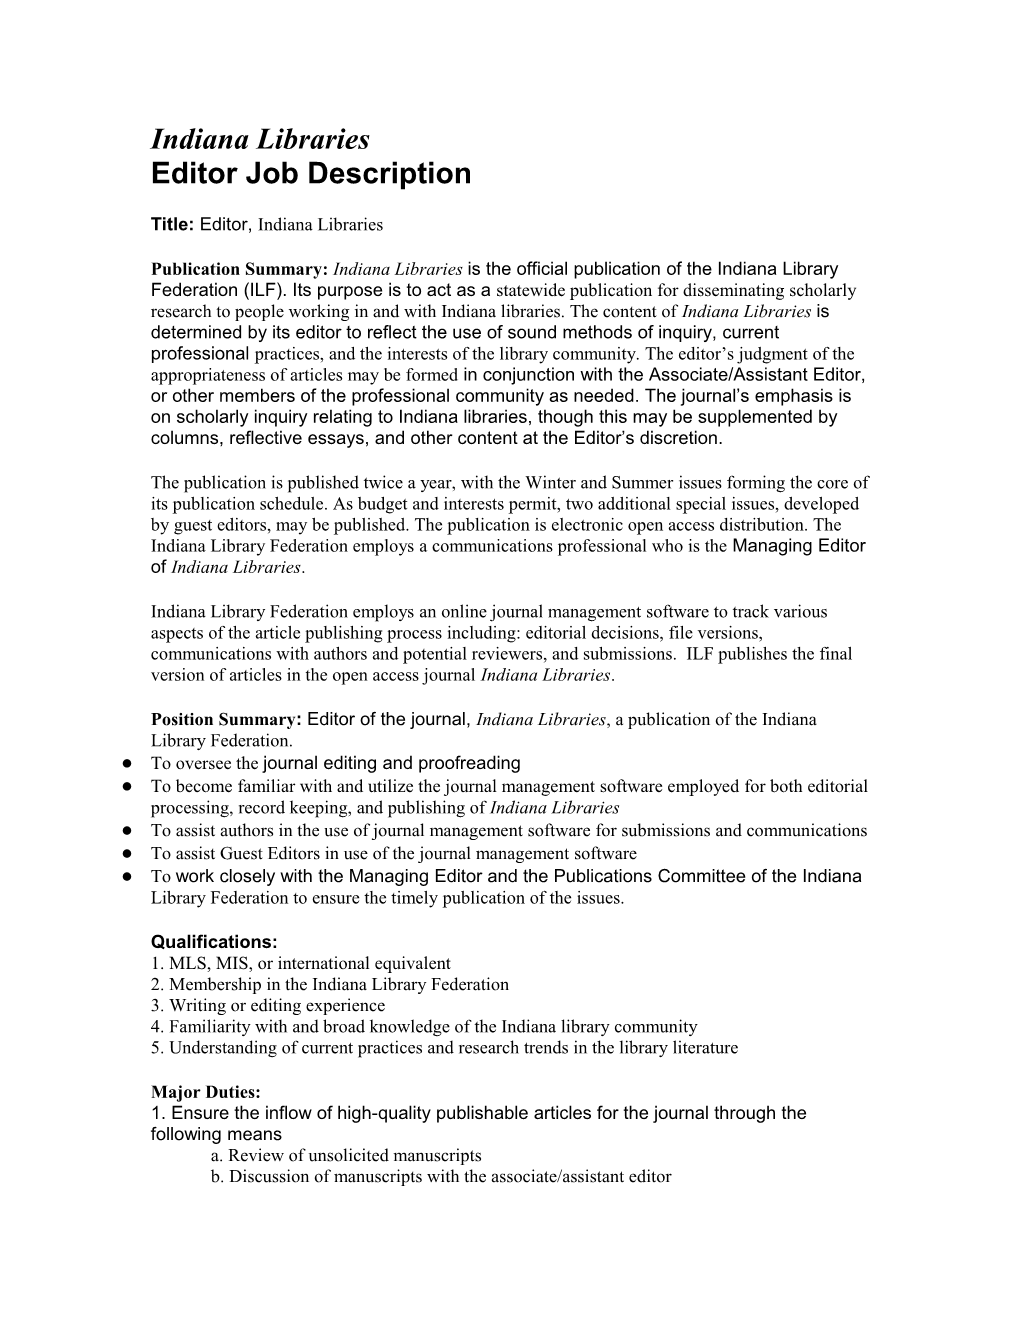 Indiana Libraries Editor Position Description Final 2014